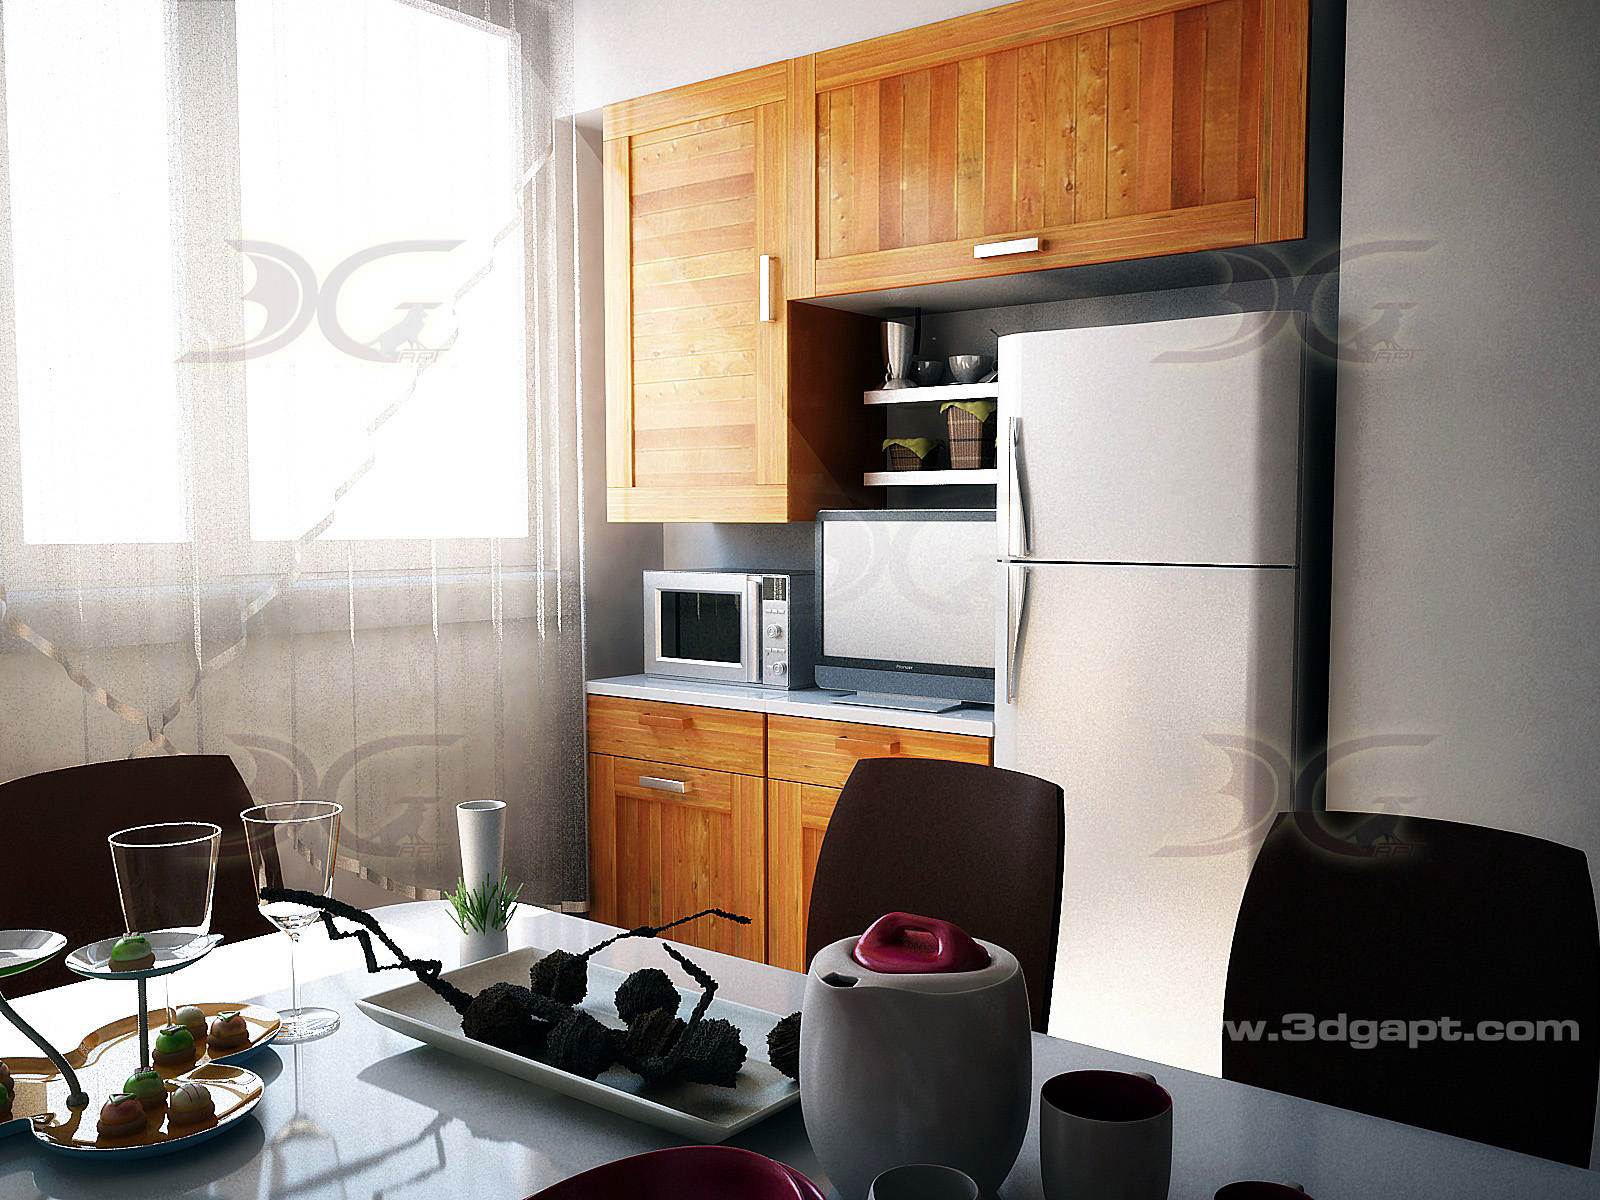 architecture interior kitchen-3versions 10